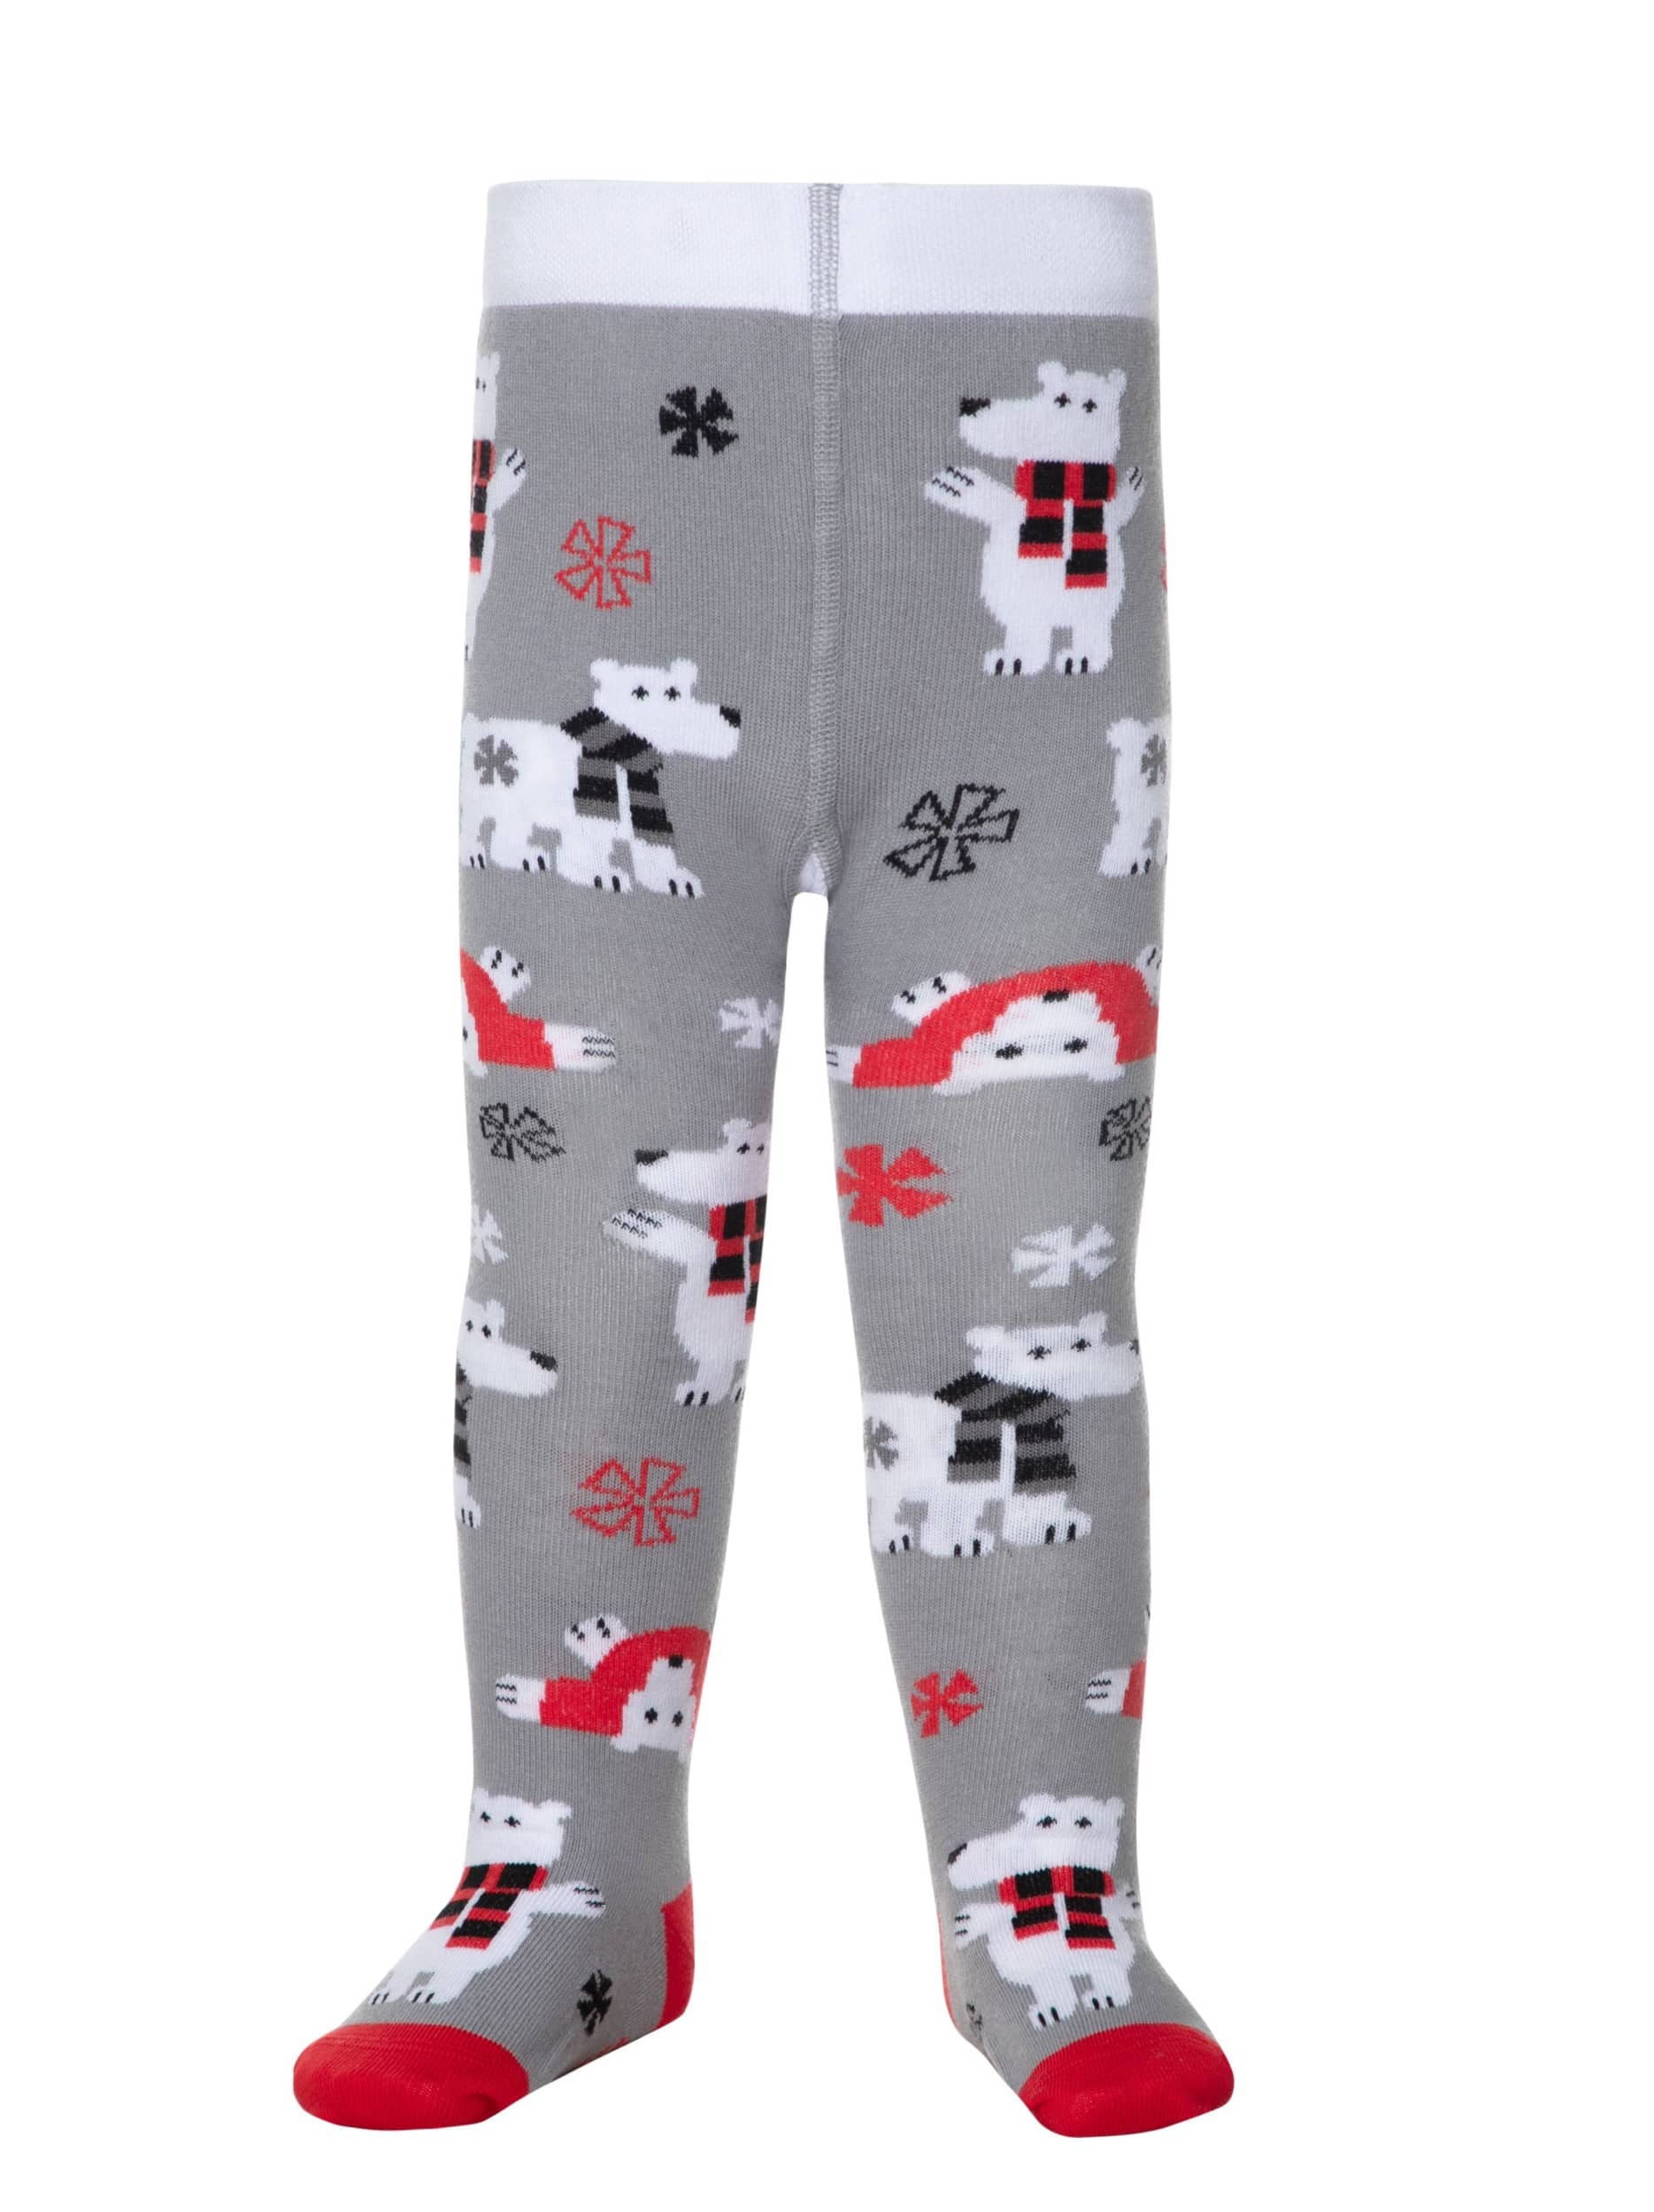 Otroške hlačne nogavice z božičnim vzorcem Bear